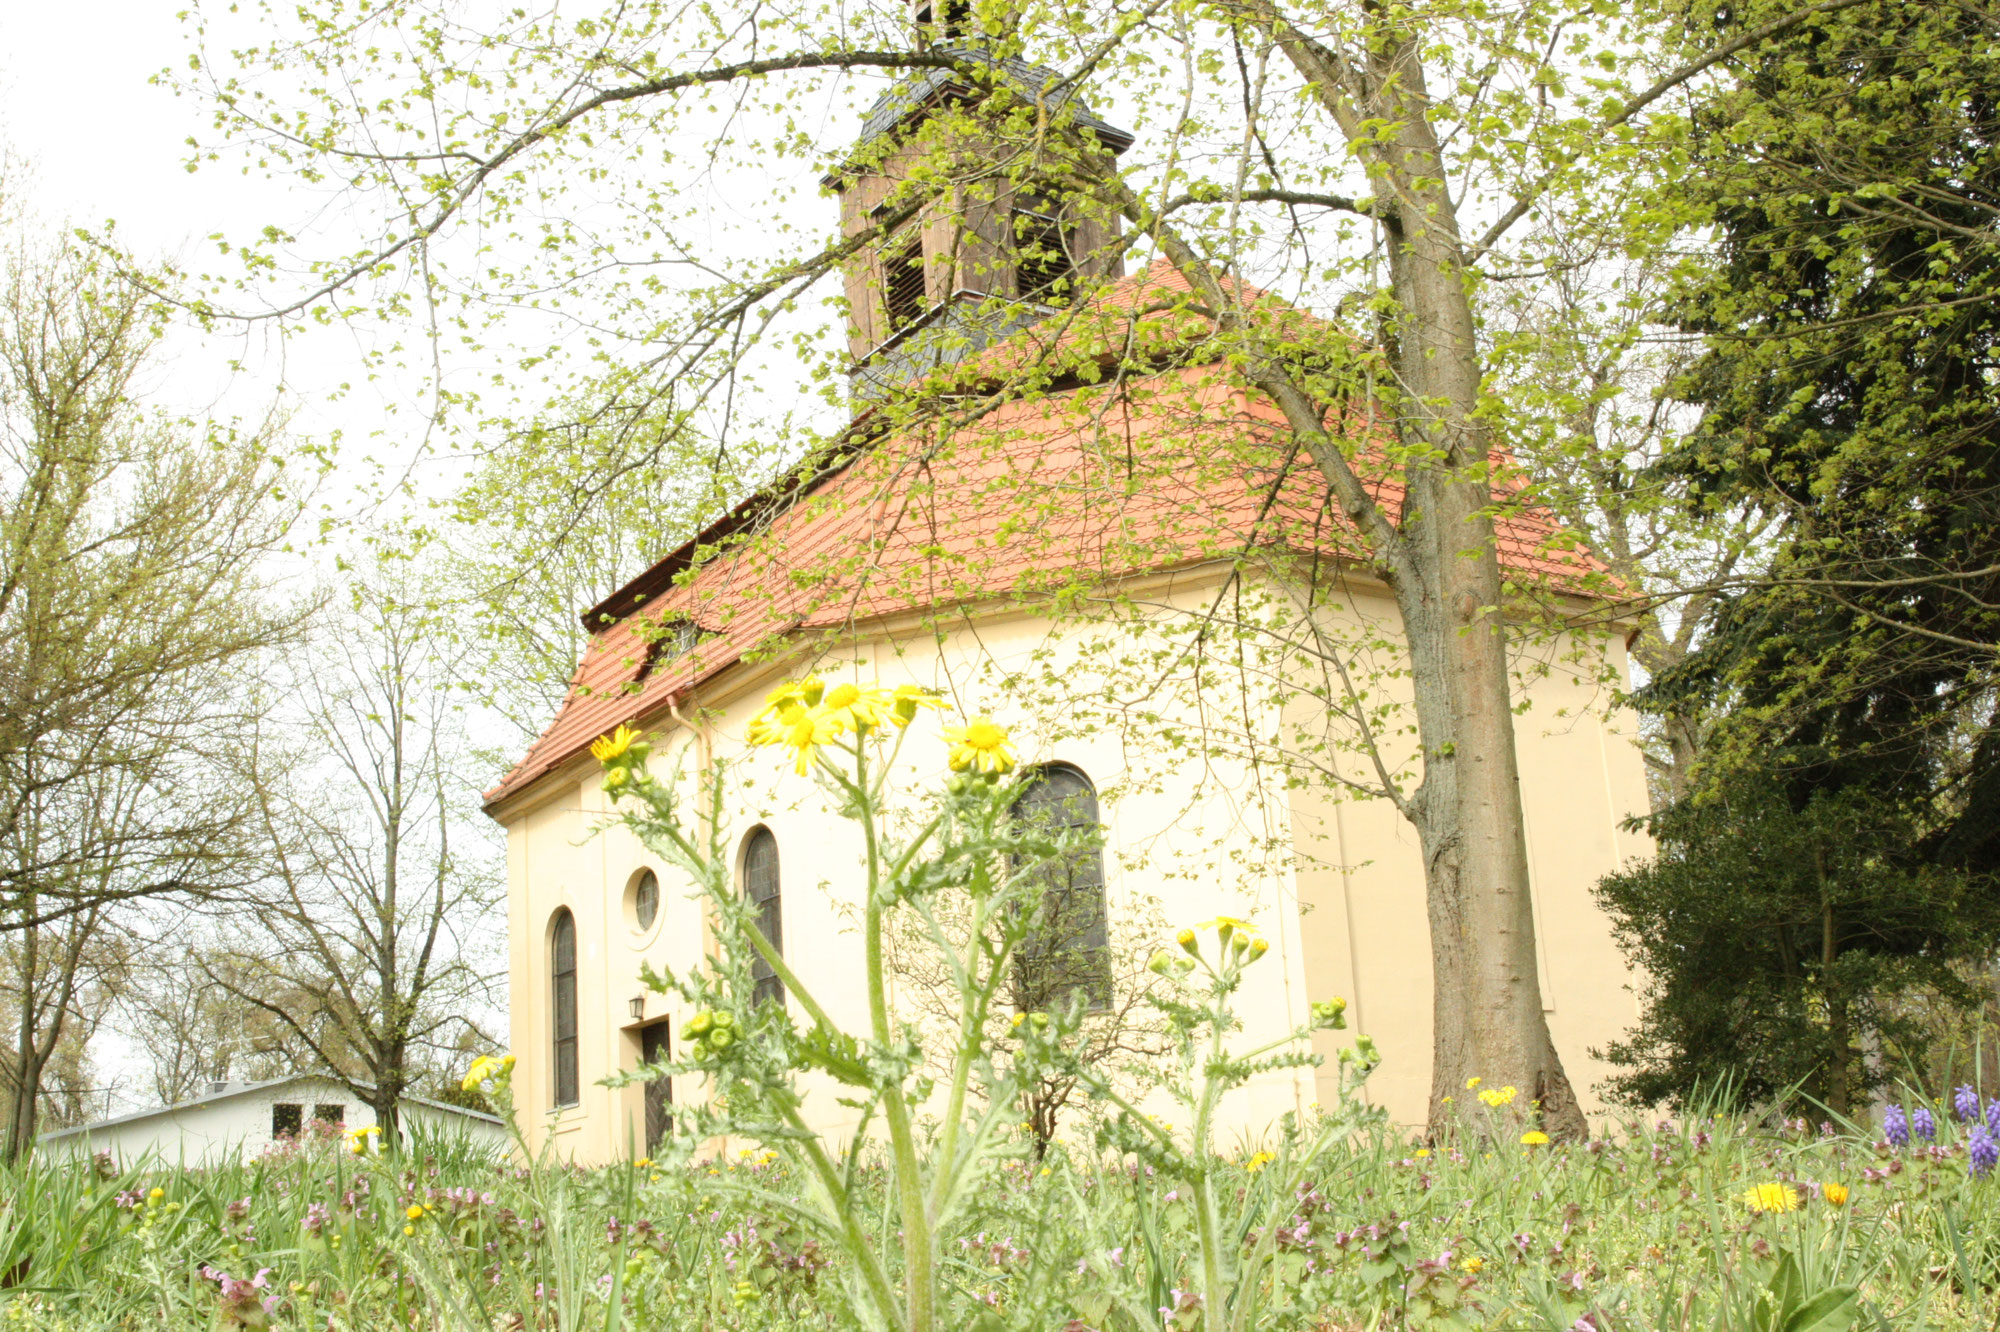 Historische Schlosskapelle aus Dornröschenschlaf erweckt: Konzertreihe in Großwudicke